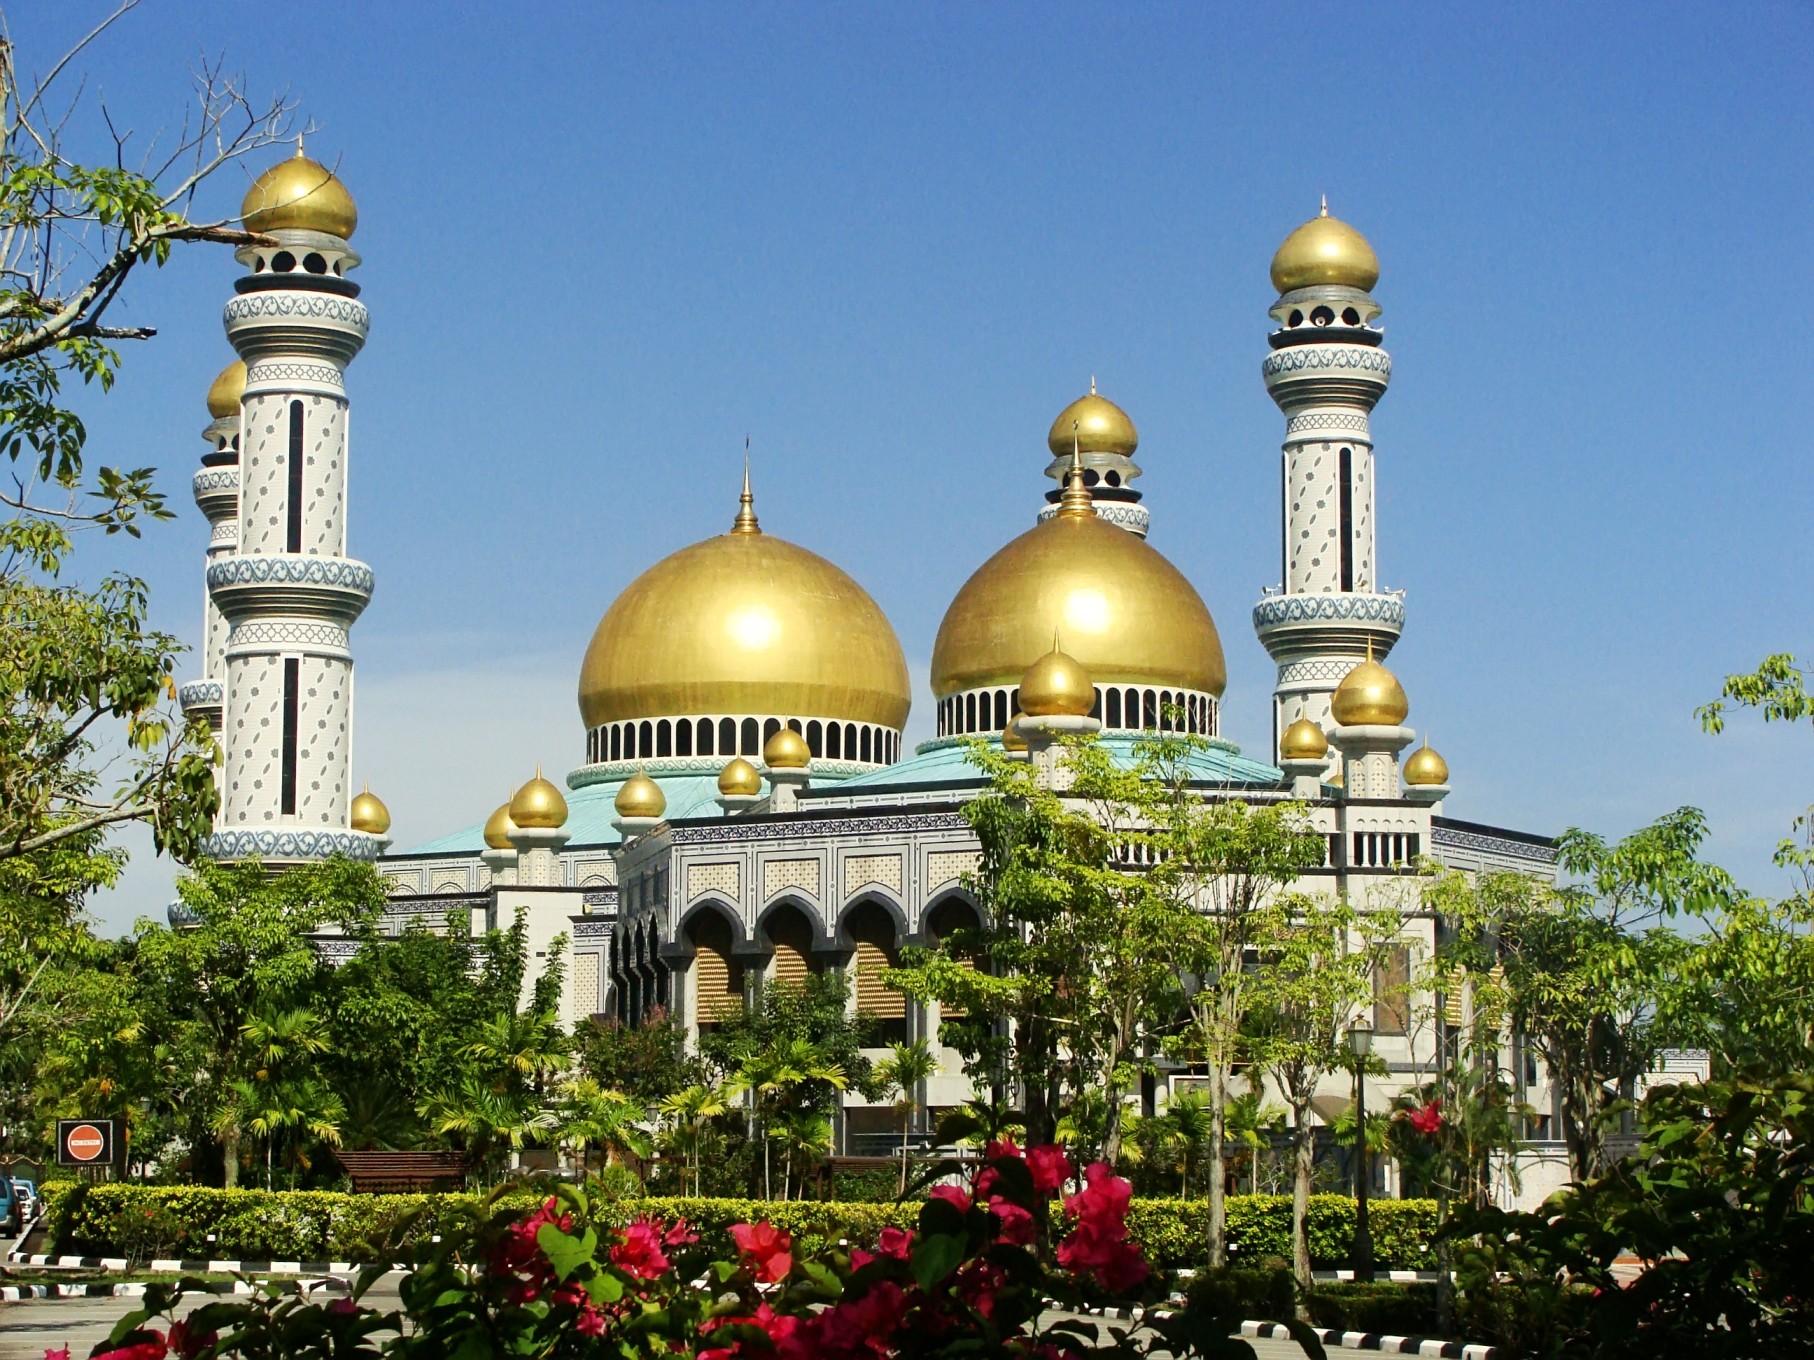 Berlibur ke Brunei Darussalam? Kunjungi 7 Destinasi Menarik ini!